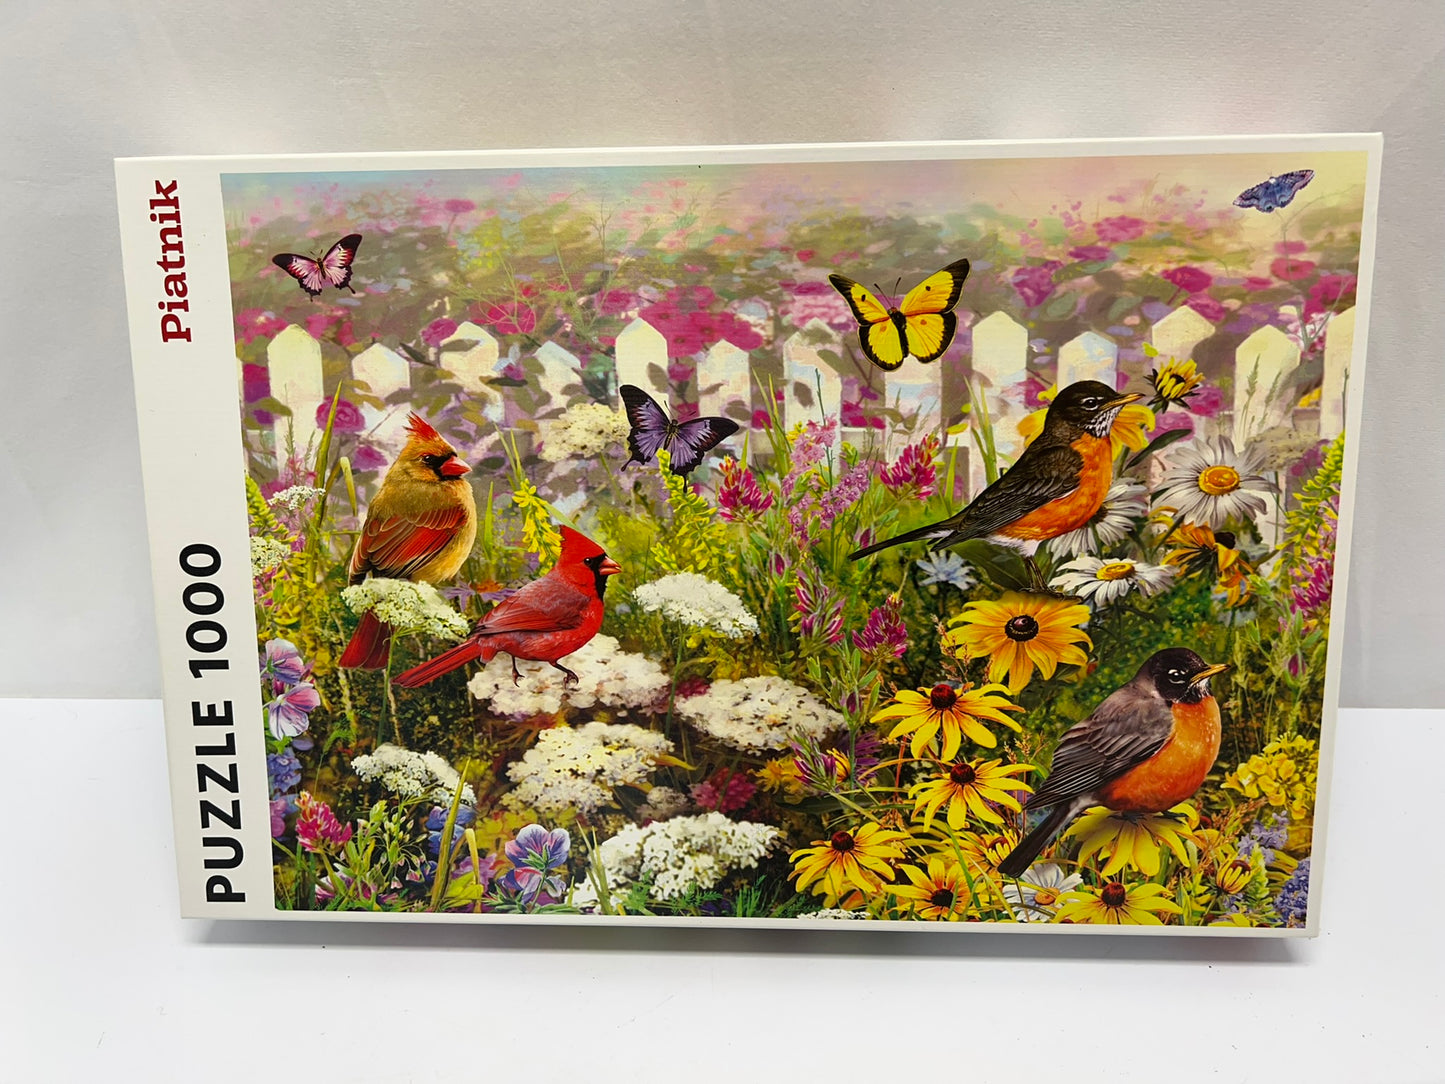 Jigsaw Puzzle Piatnik 1000 pc Joyful Place Butterflies and Birds Excellent